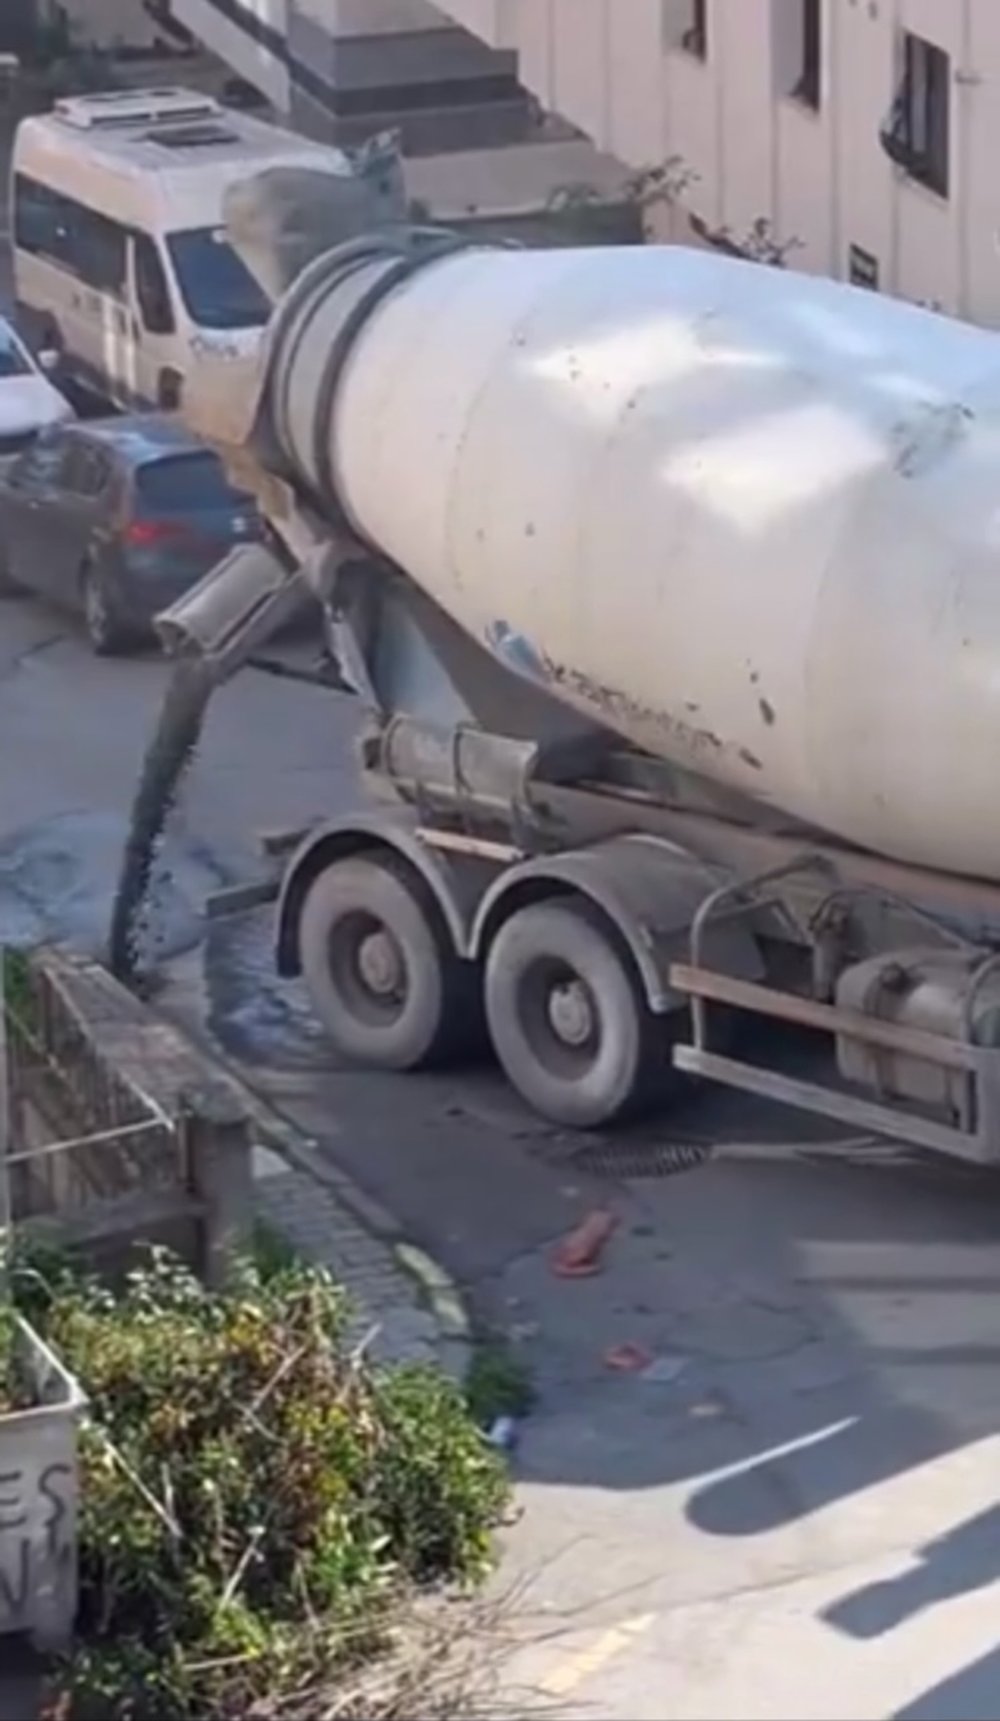 Yola beton dökerek ilerleyen şoför yakalanarak cezaya çarptırıldı